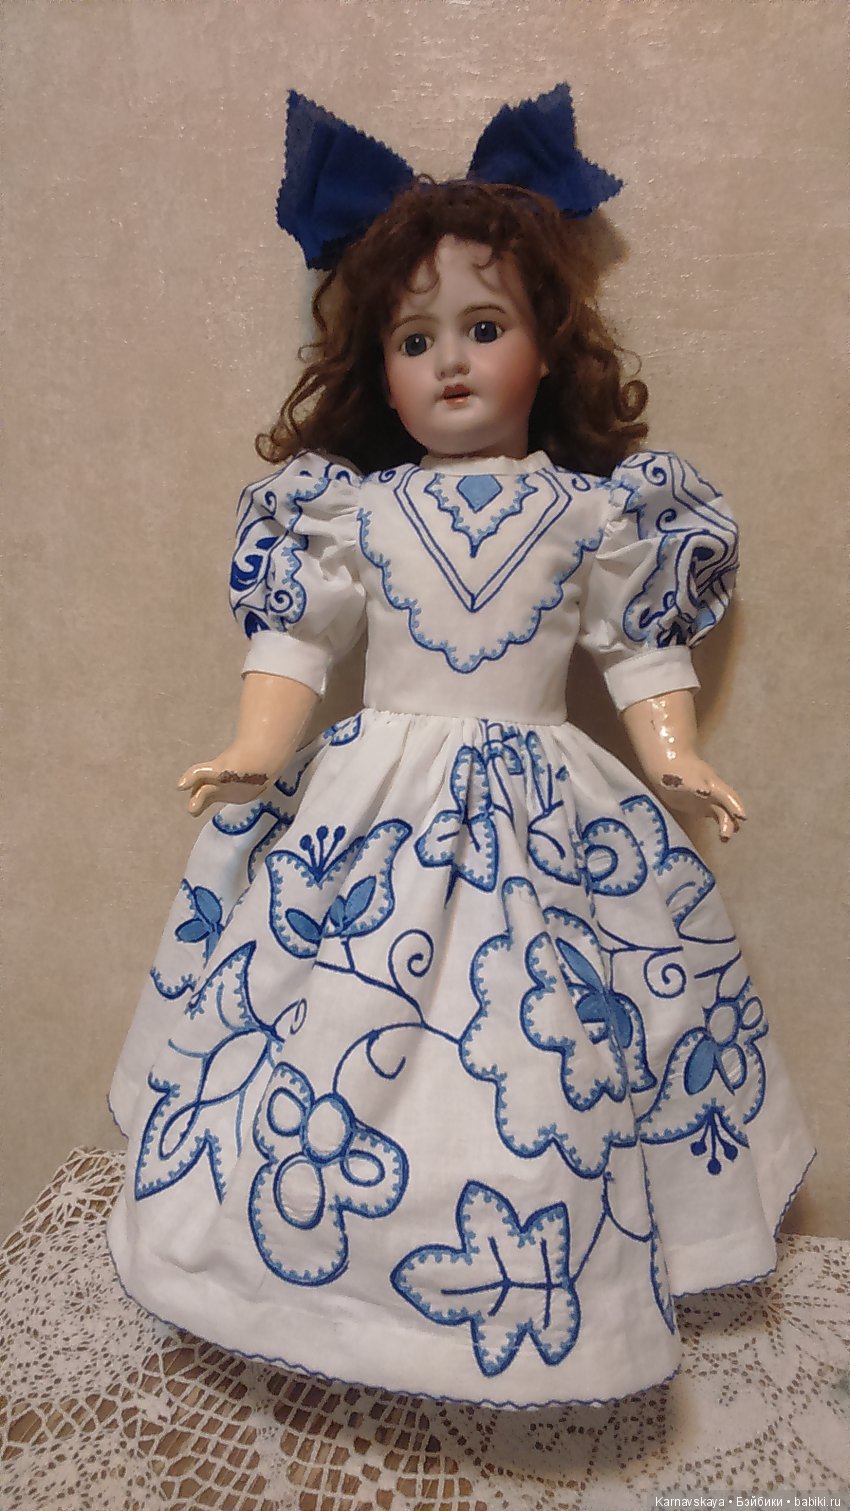 Платье из бумаги своими руками: яркие идеи для девочек на конкурс и для игрушечных кукол